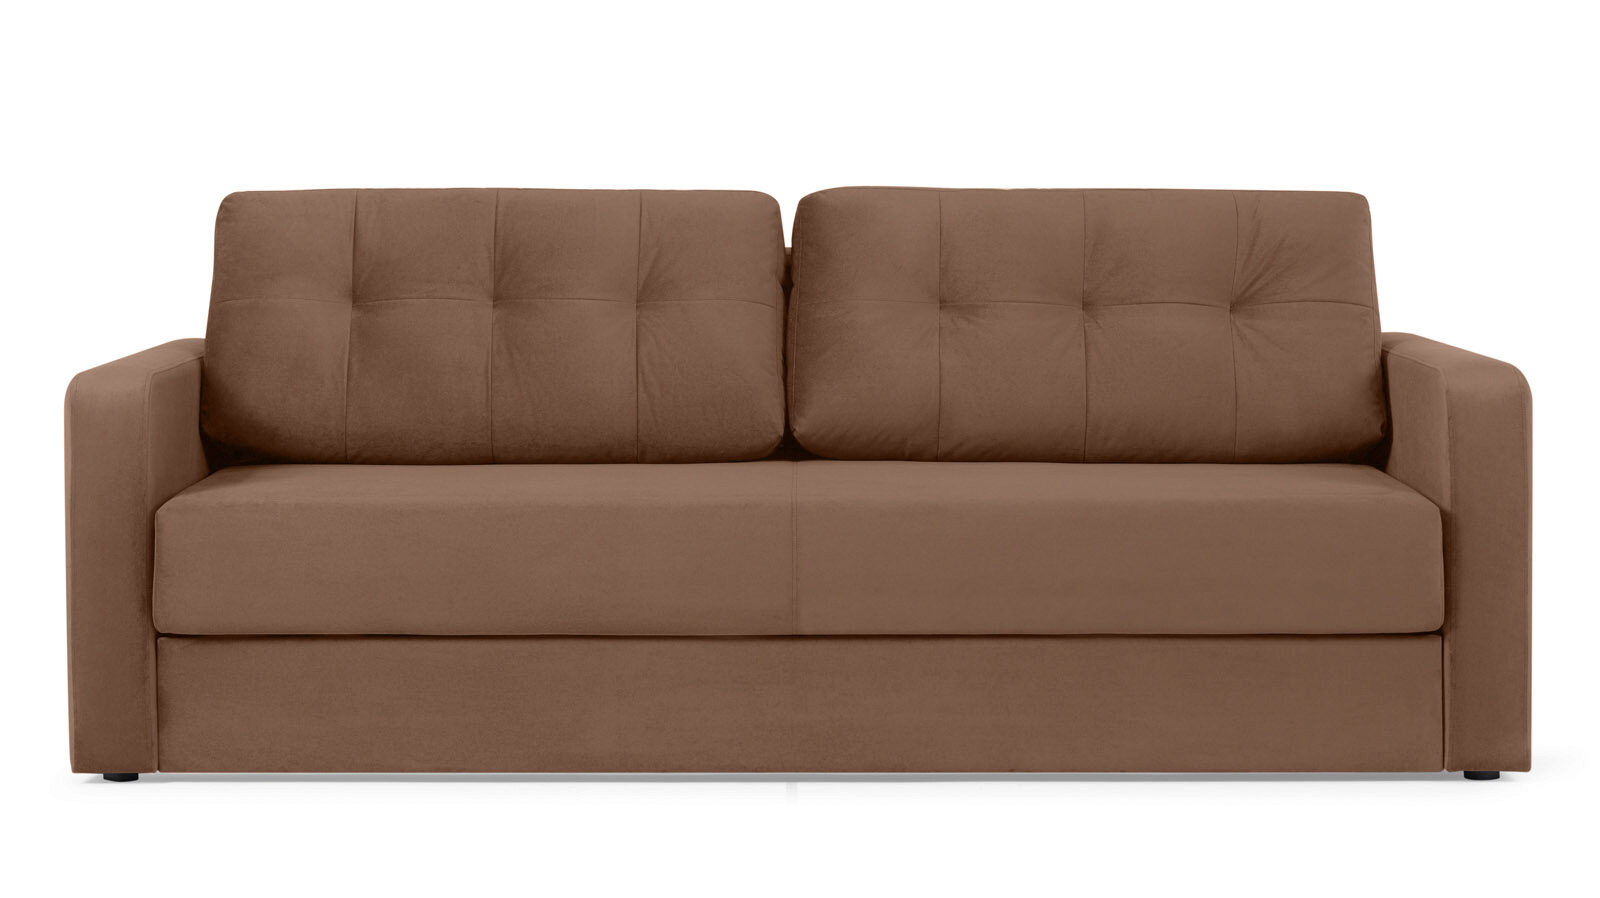 Прямой диван Loko Pro с широкими подлокотниками, с мягким матрасом плавучий диван выпуск 2